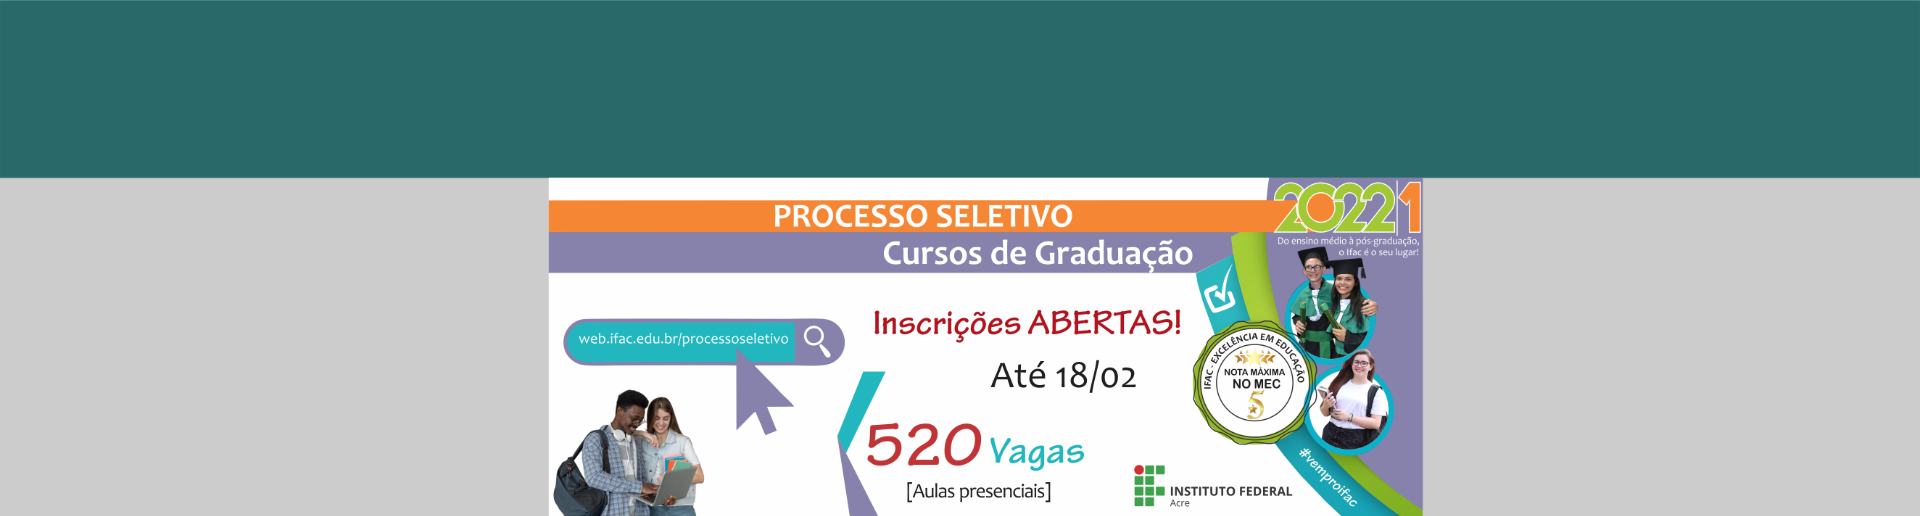 5_PS_Graduação_PEÇAS_gerais_front_site_.png